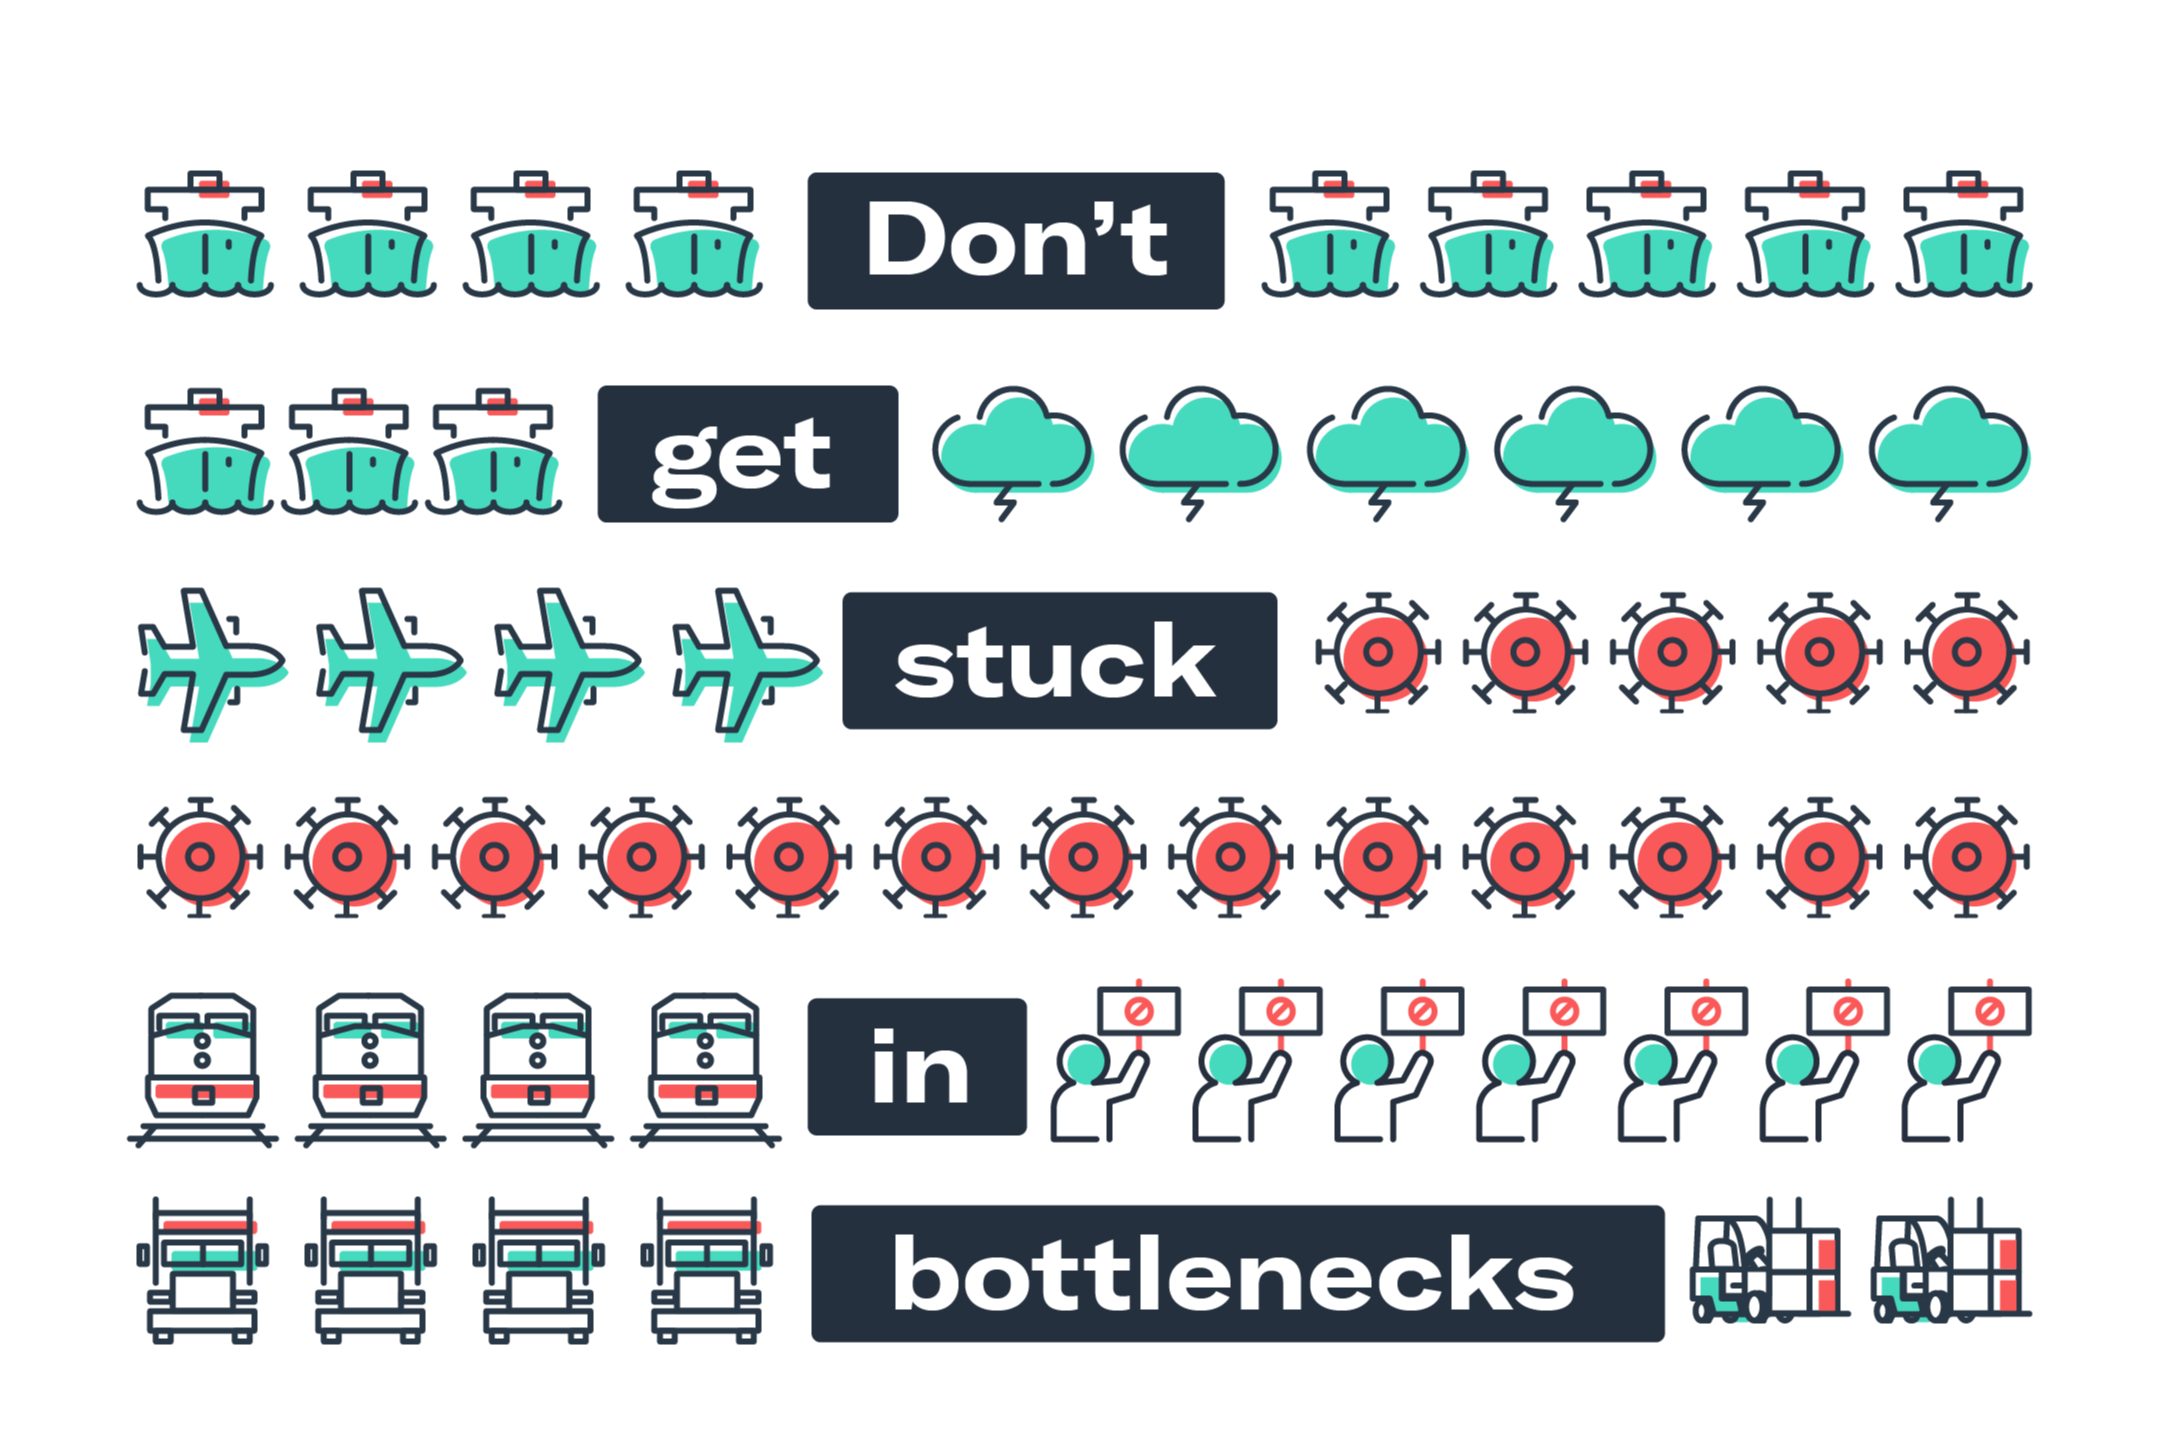 EU campaign bottleneck q1/22 - #5 Dont get stuck bottlenecks